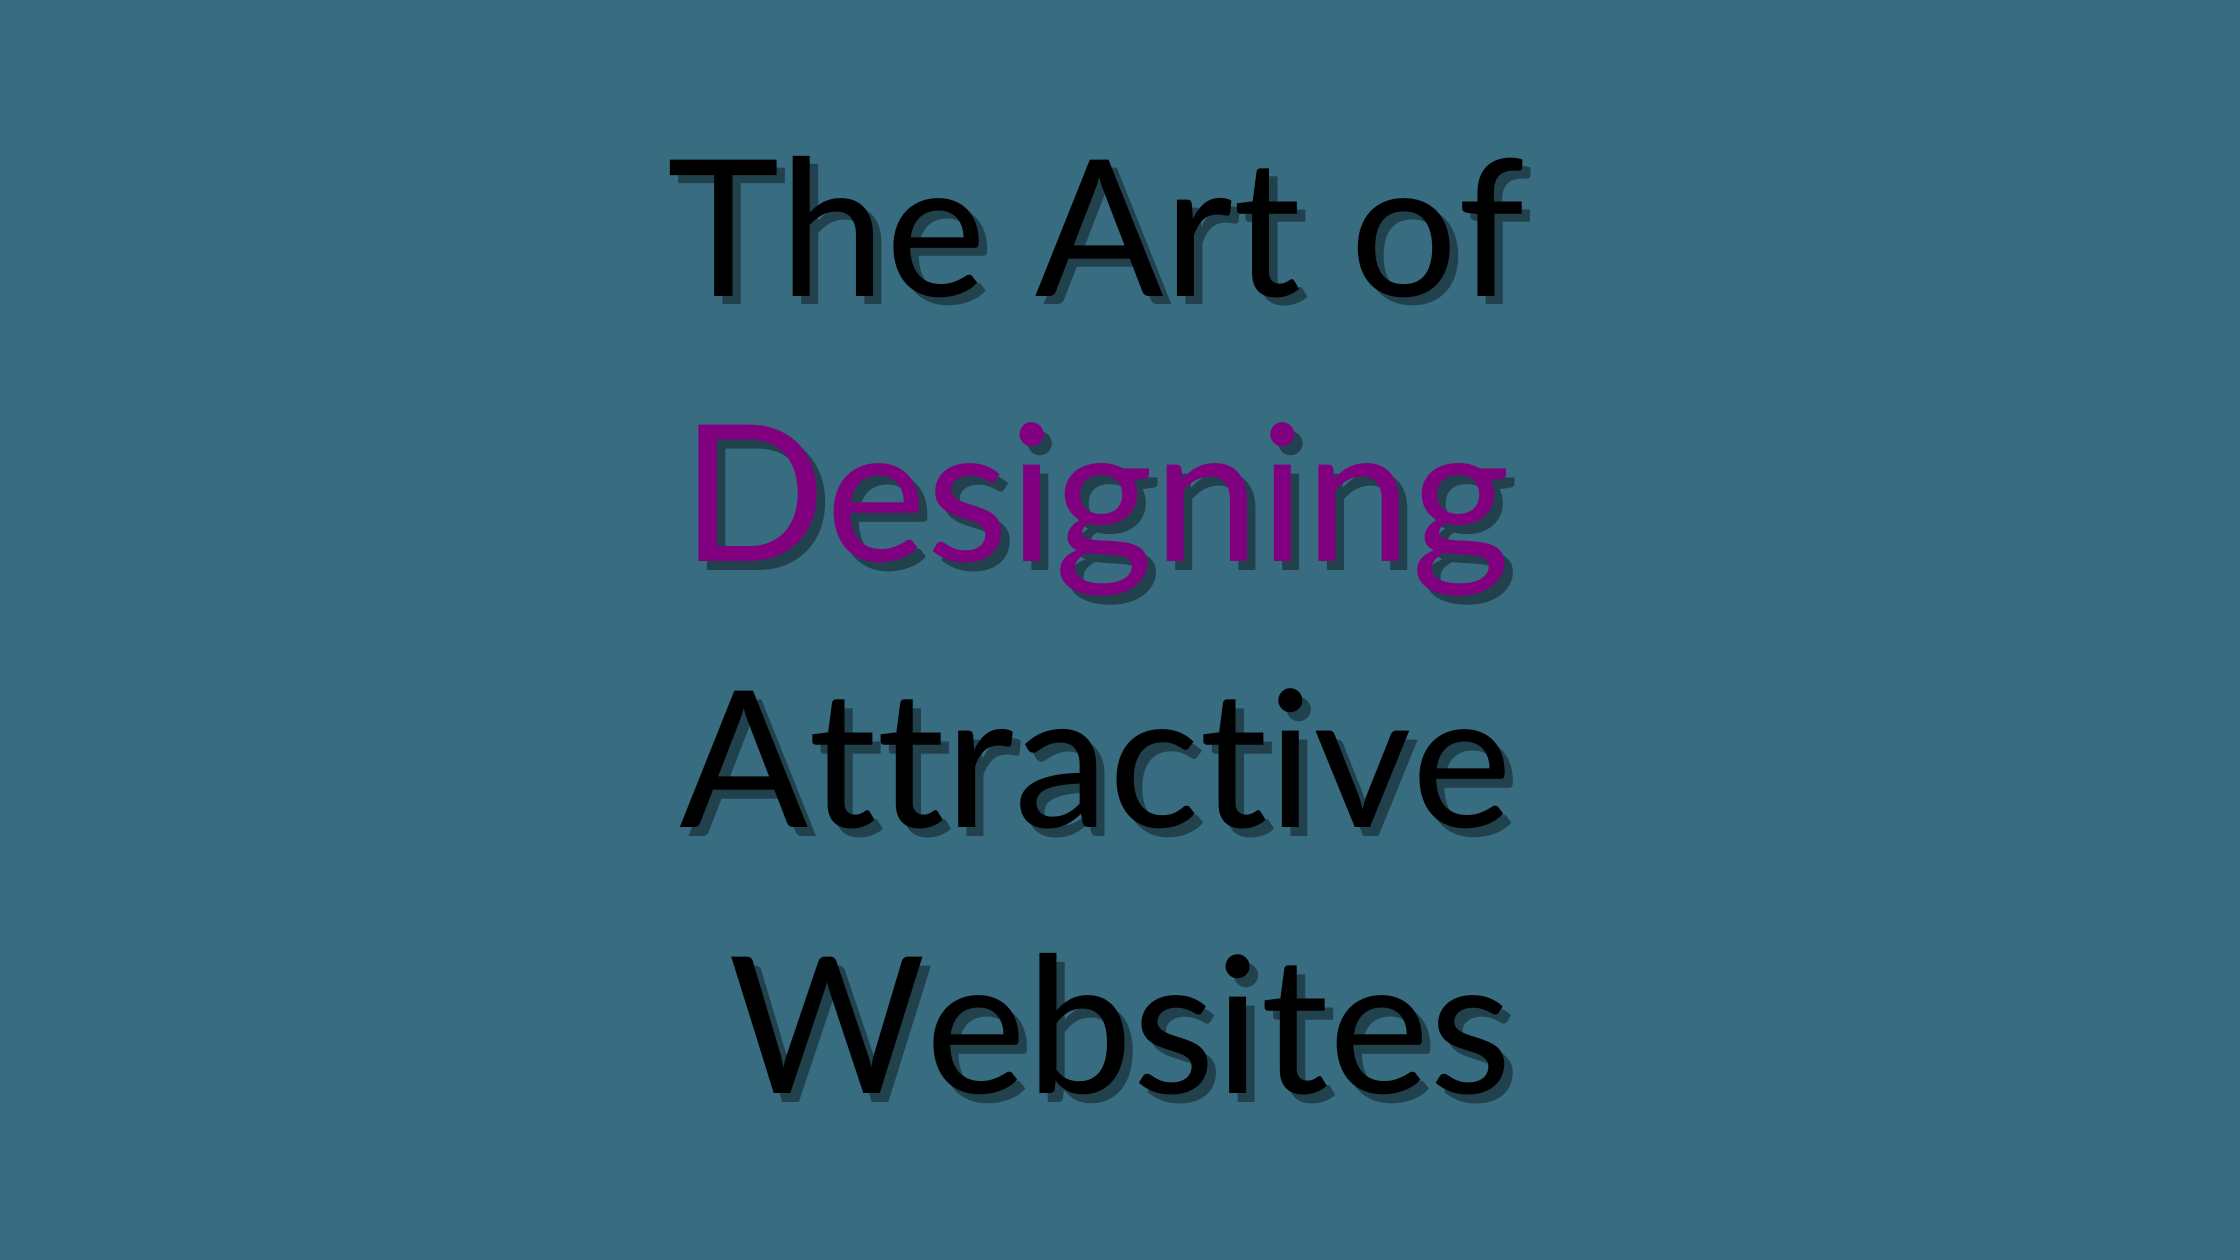 The Art of Designing Attractive Websites